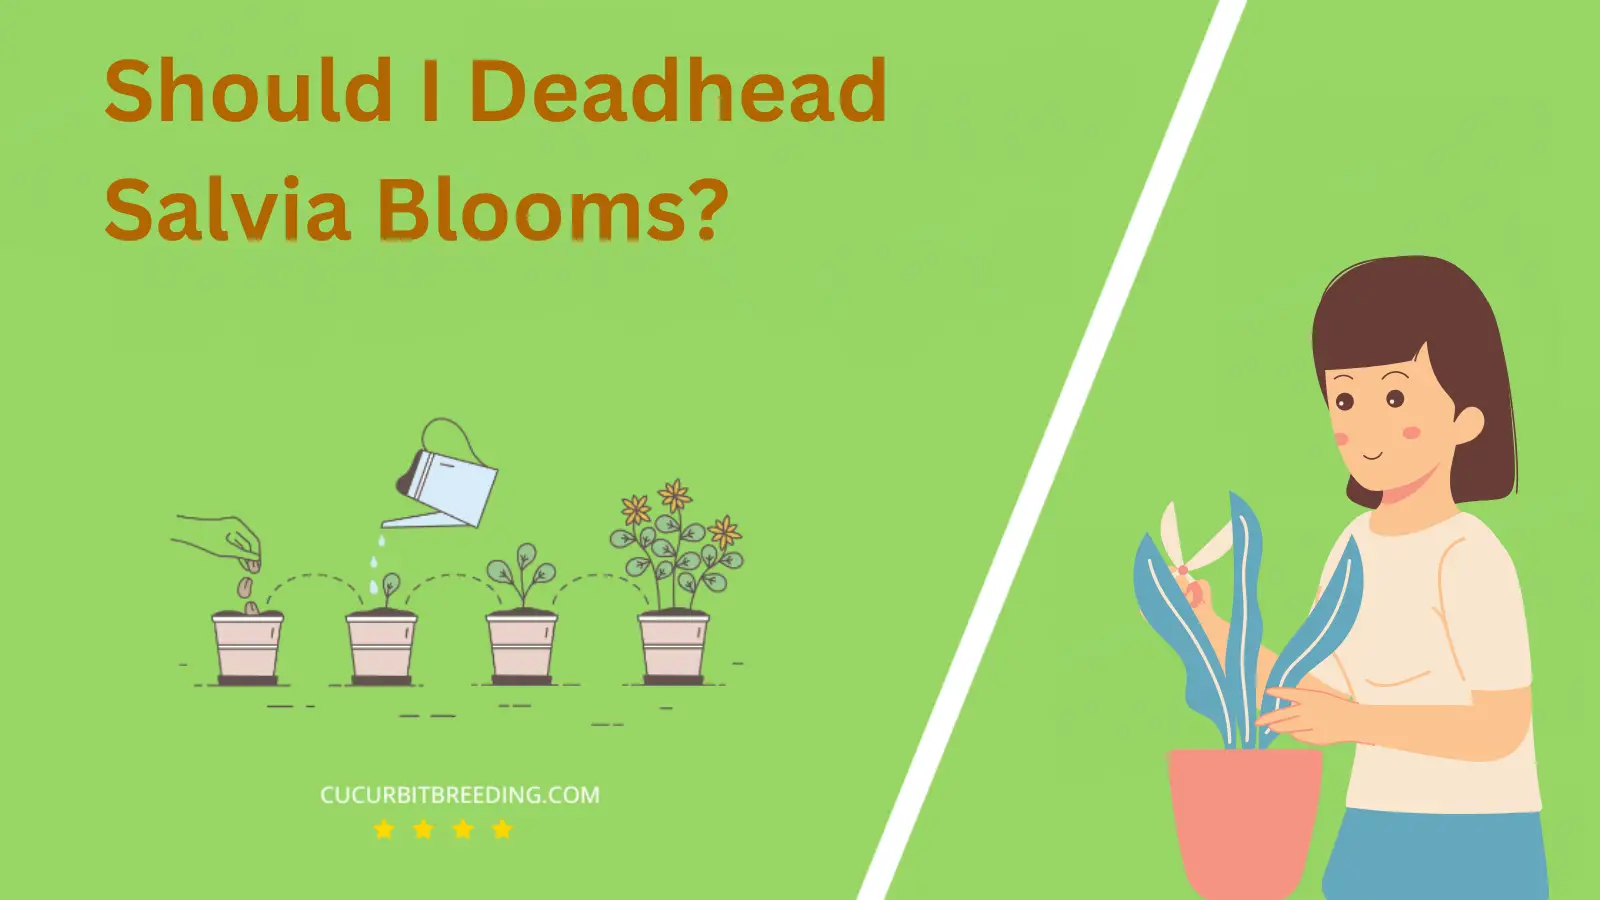 Should I Deadhead Salvia Blooms?